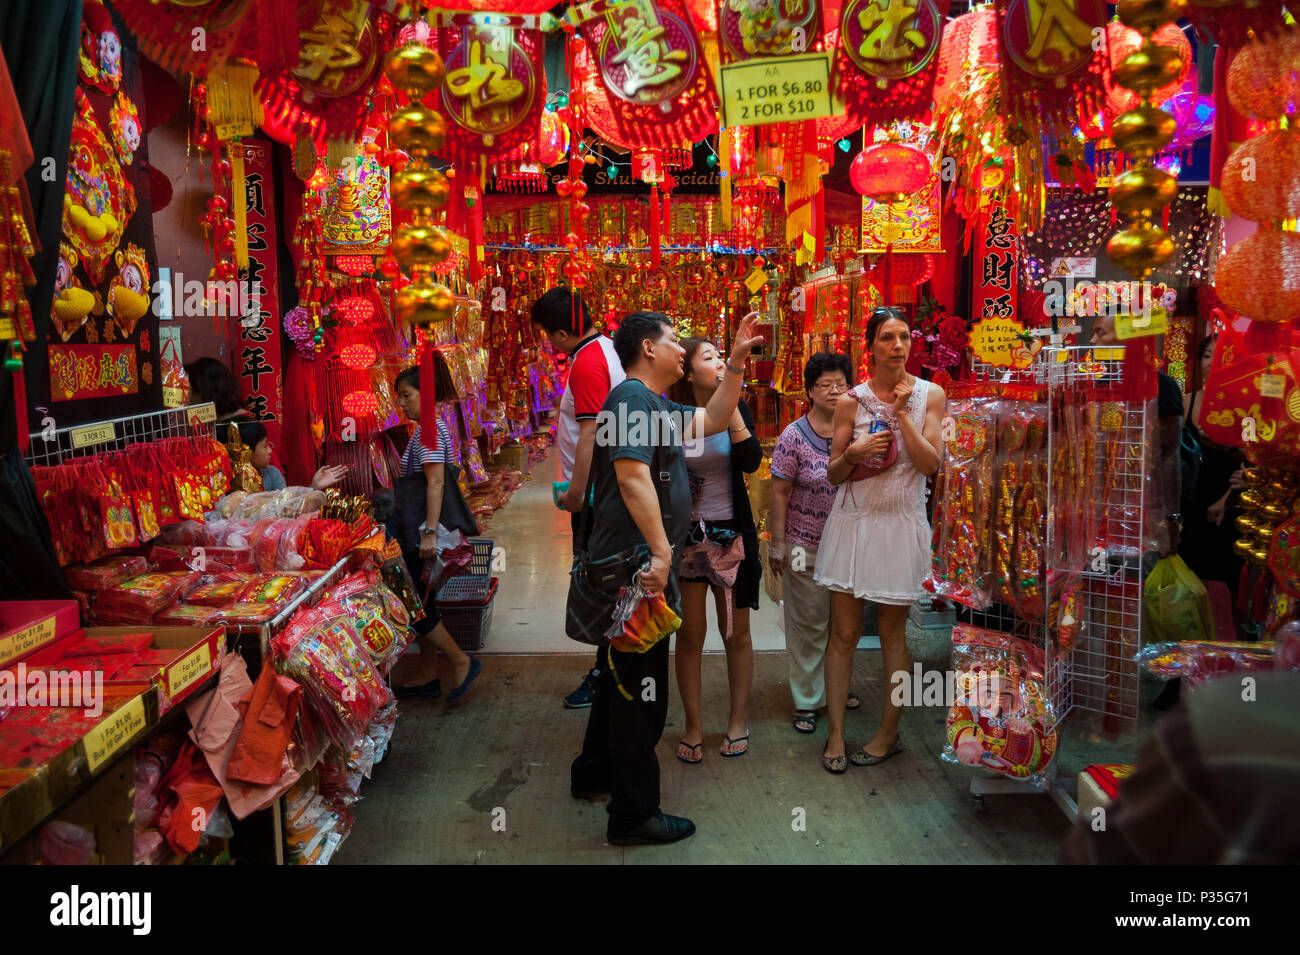 Singapore, Republic of Singapore, selling Chinese lanterns for New Year celebration Stock Photo